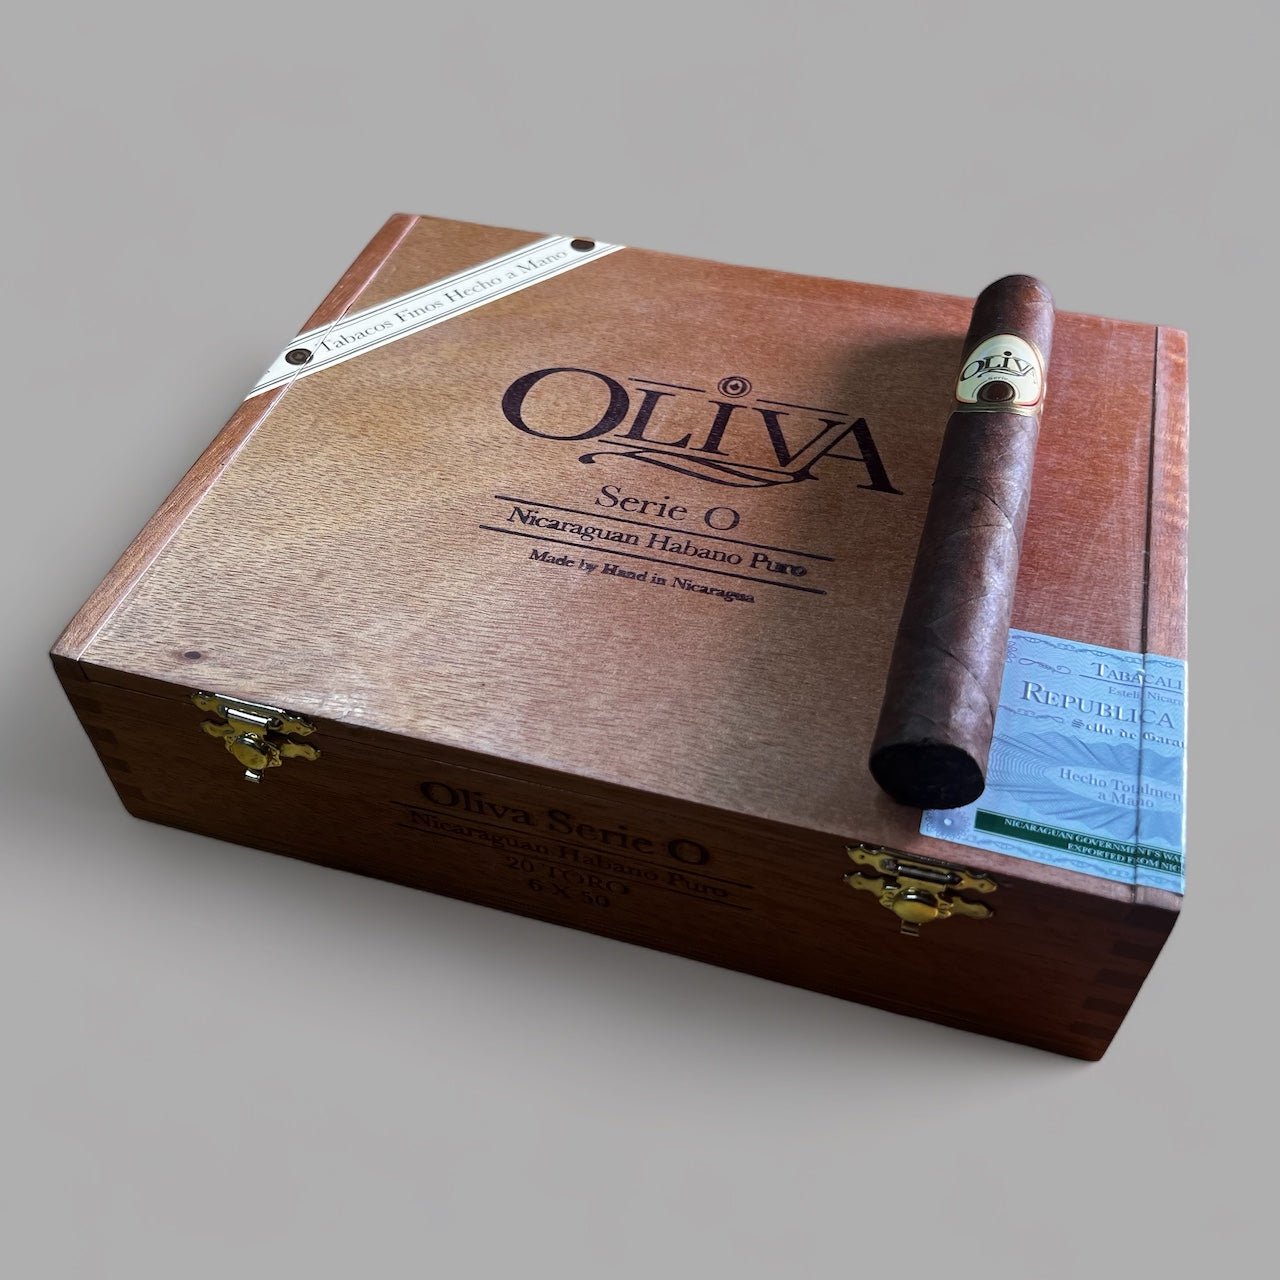 Oliva Serie O Toro - Cigar 30